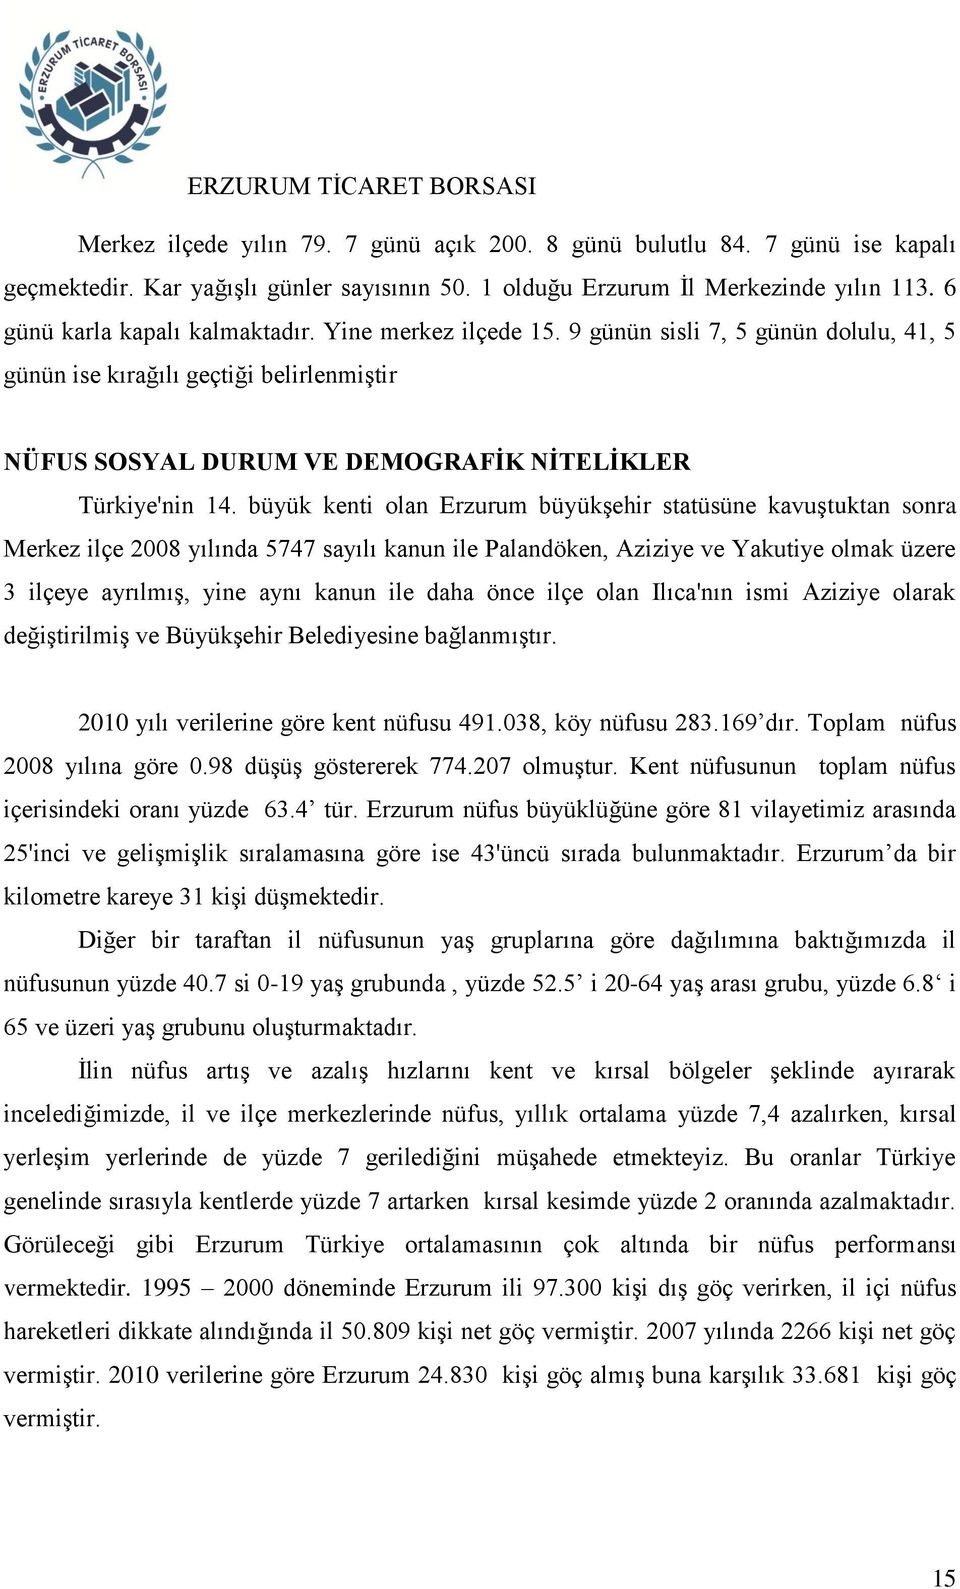 büyük kenti olan Erzurum büyükşehir statüsüne kavuştuktan sonra Merkez ilçe 2008 yılında 5747 sayılı kanun ile Palandöken, Aziziye ve Yakutiye olmak üzere 3 ilçeye ayrılmış, yine aynı kanun ile daha